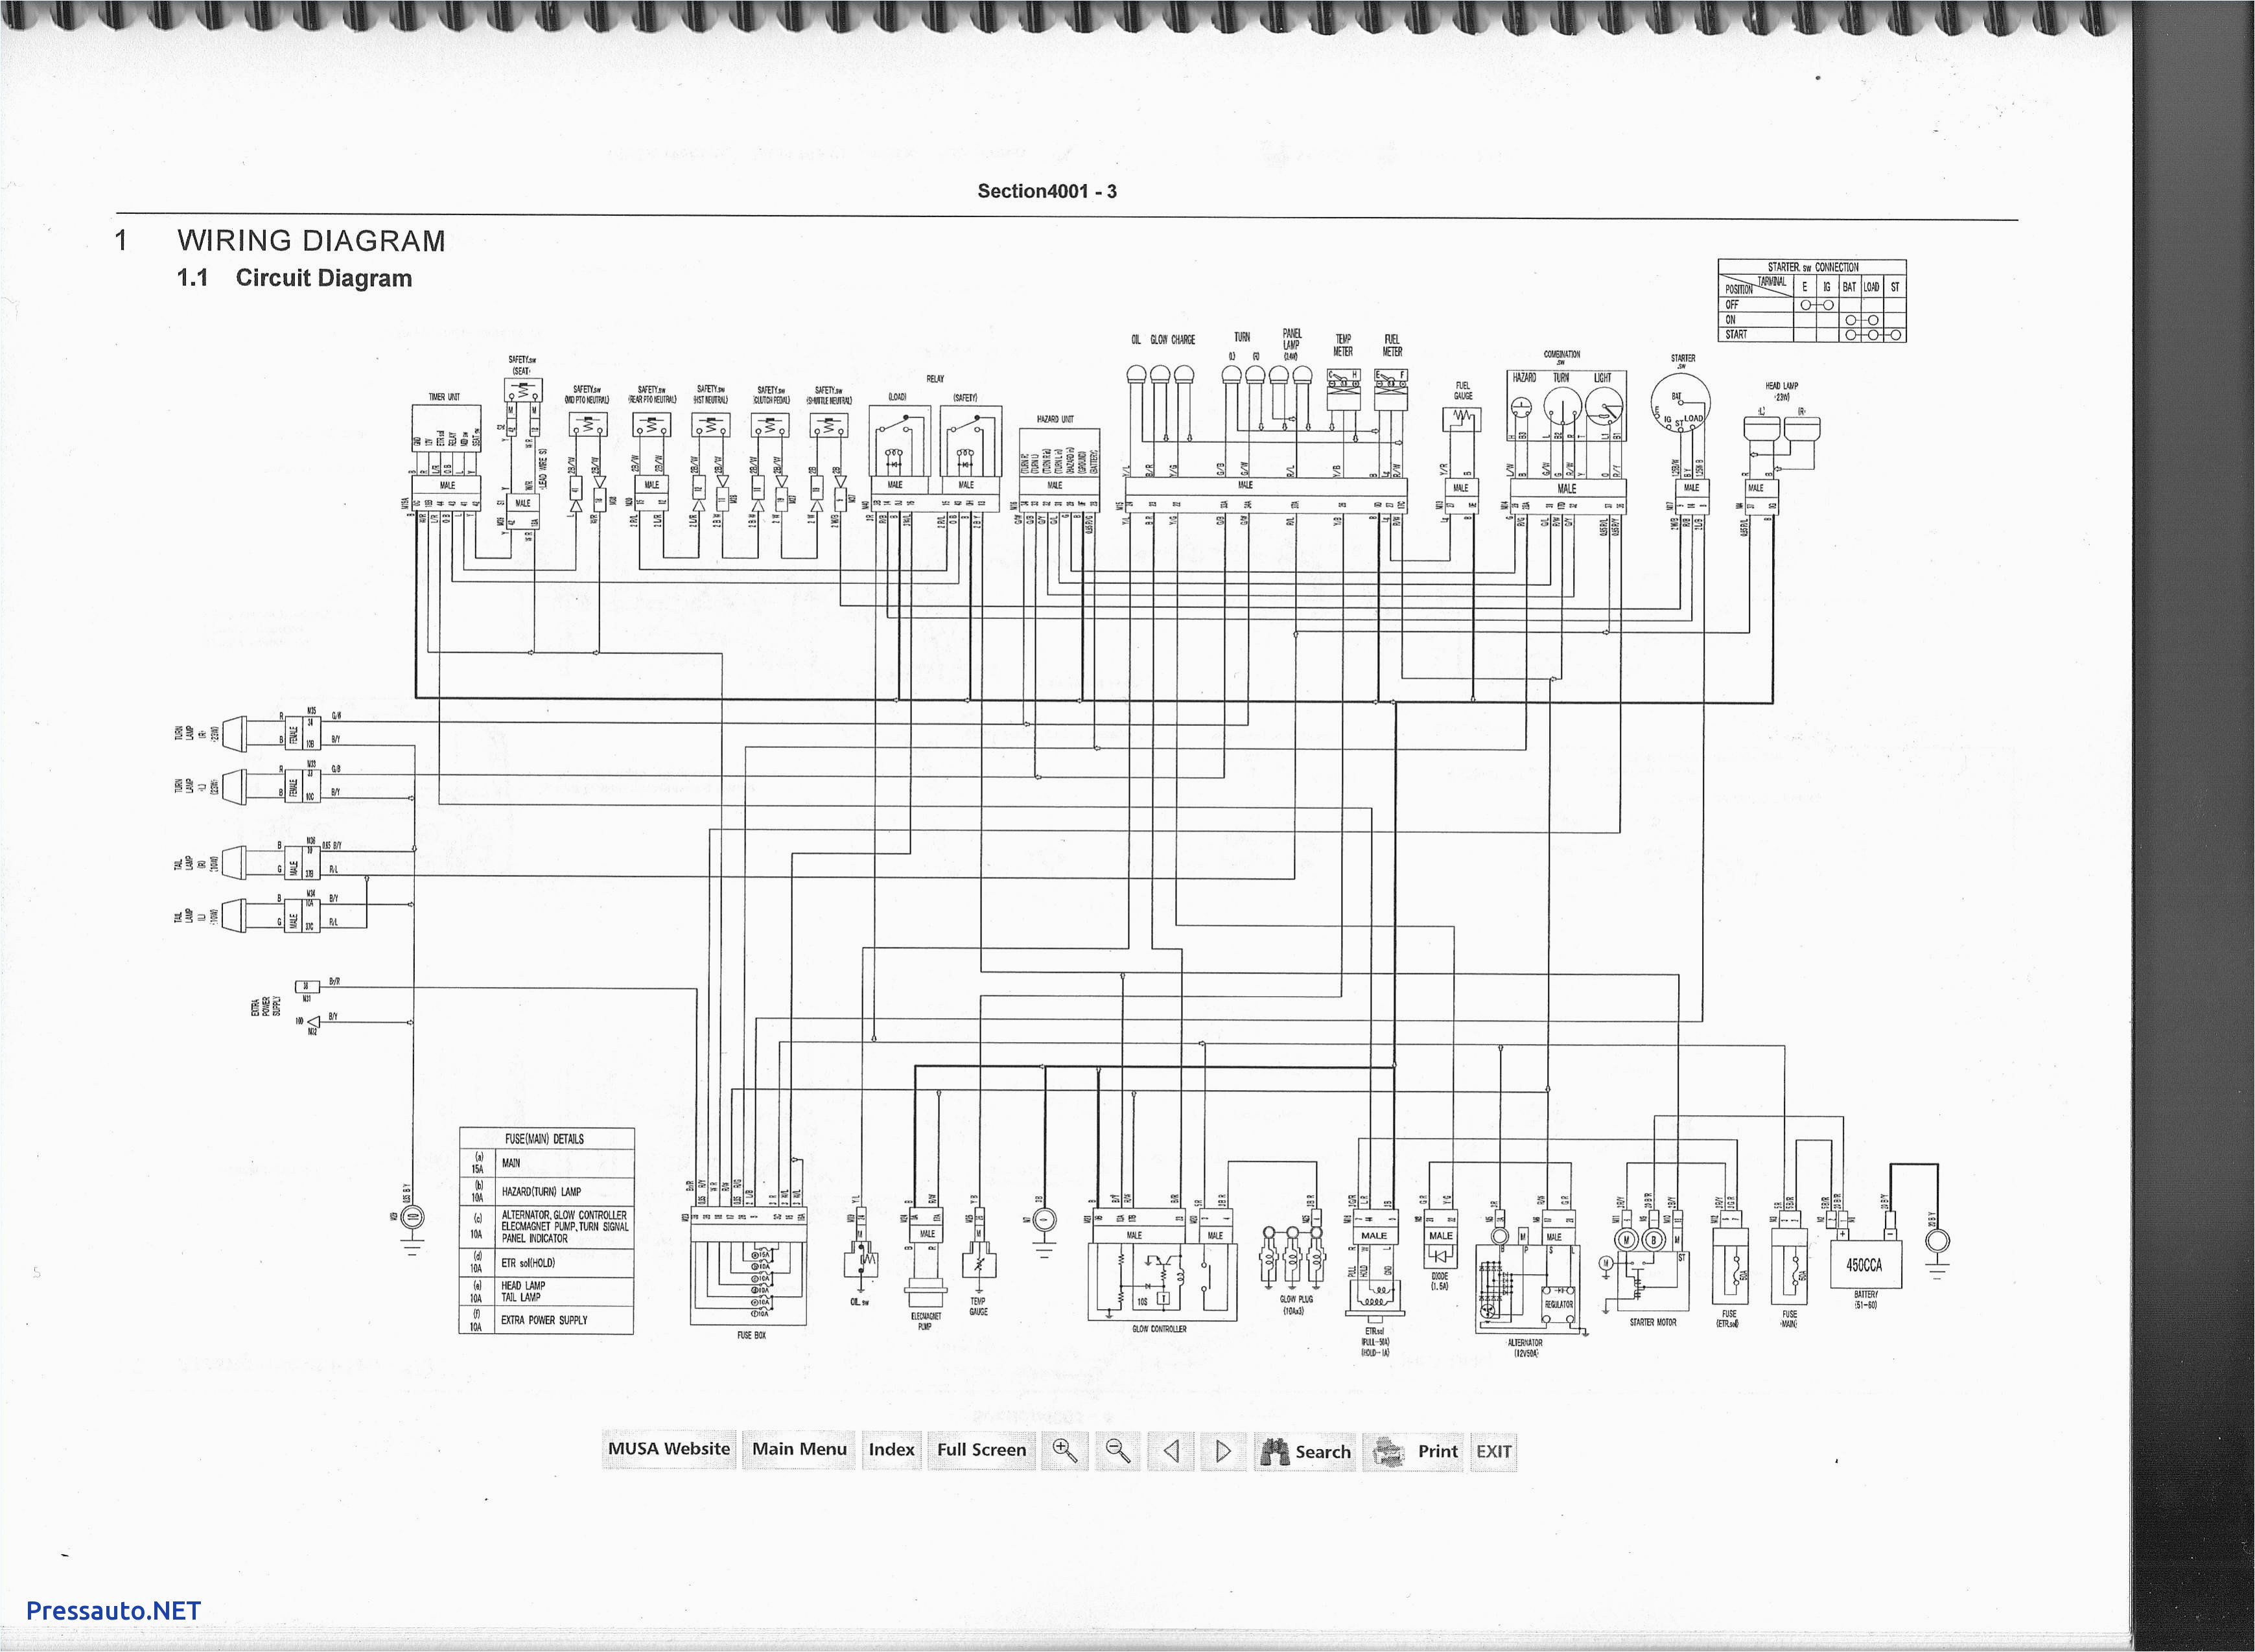 k301 wiring diagram